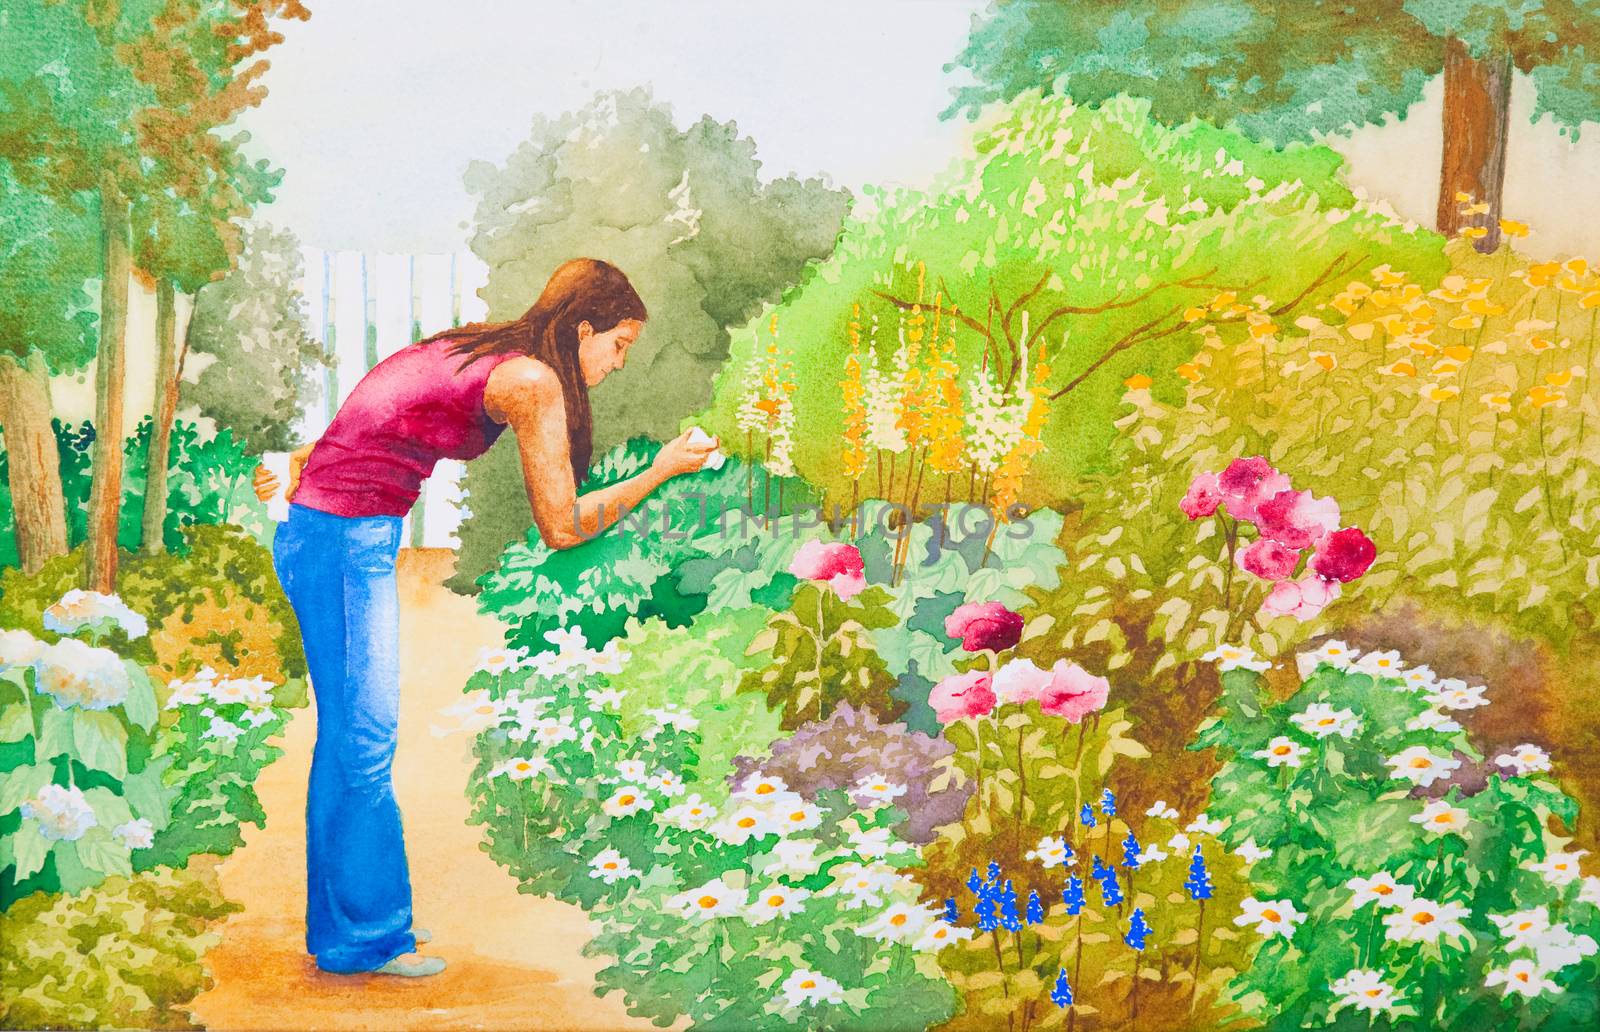 The Flower Garden by songbird839